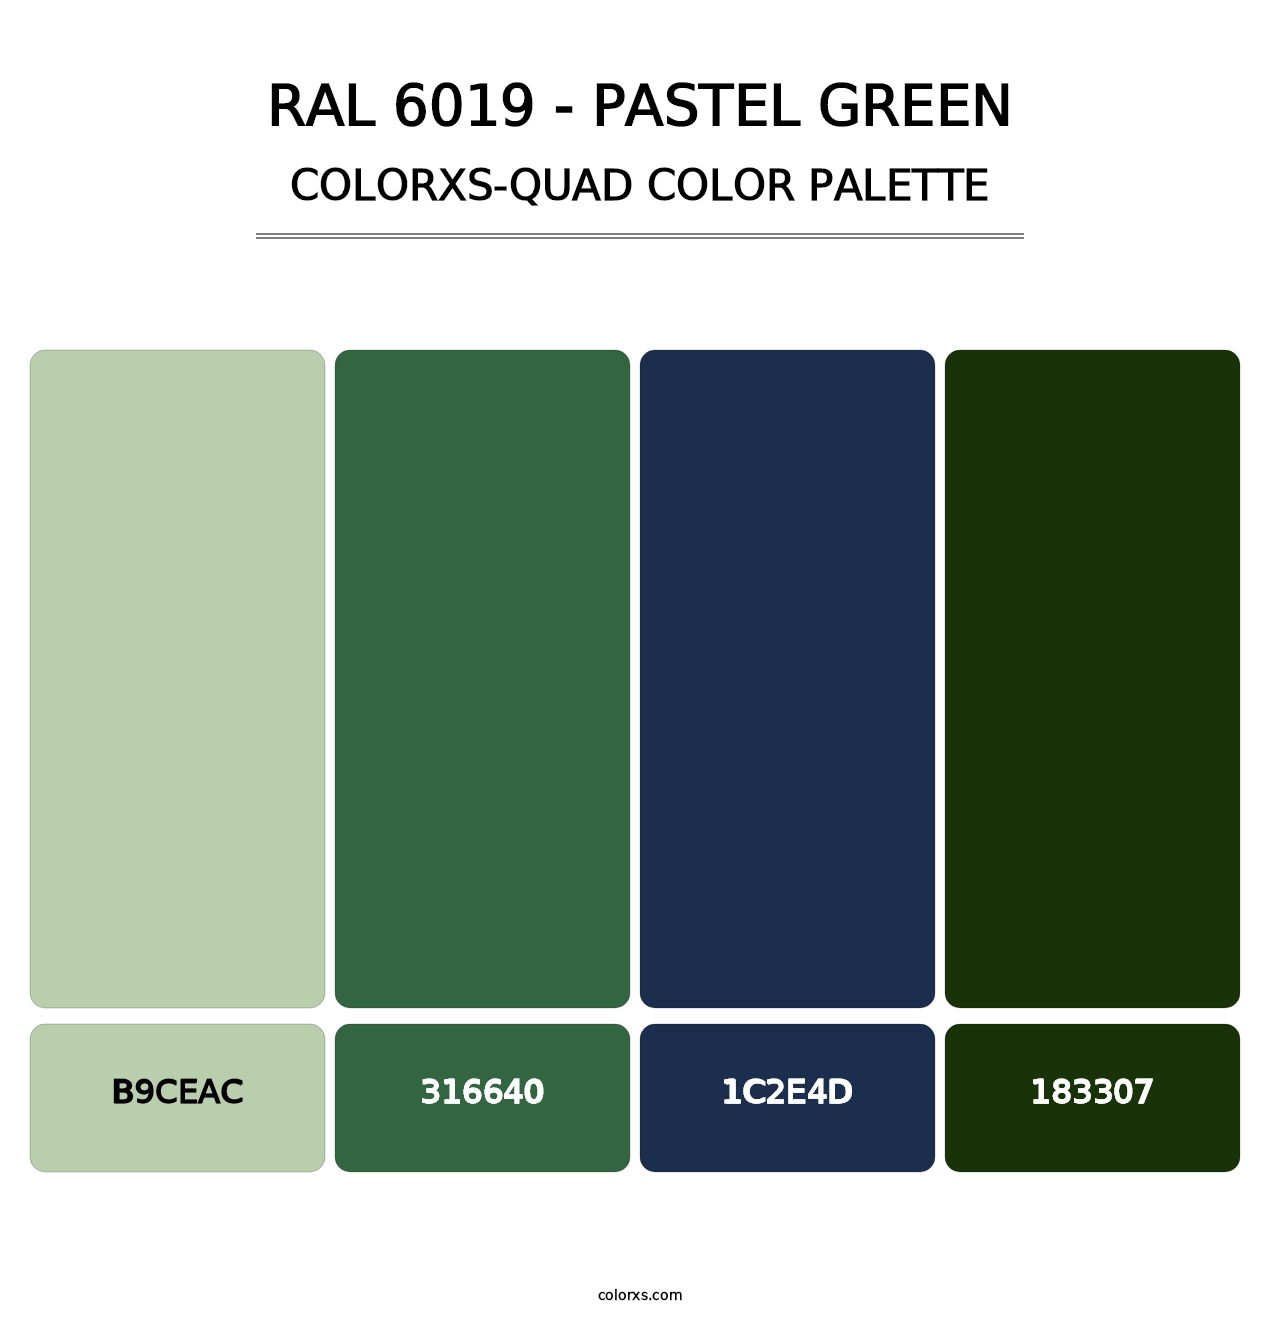 RAL 6019 - Pastel Green - Colorxs Quad Palette